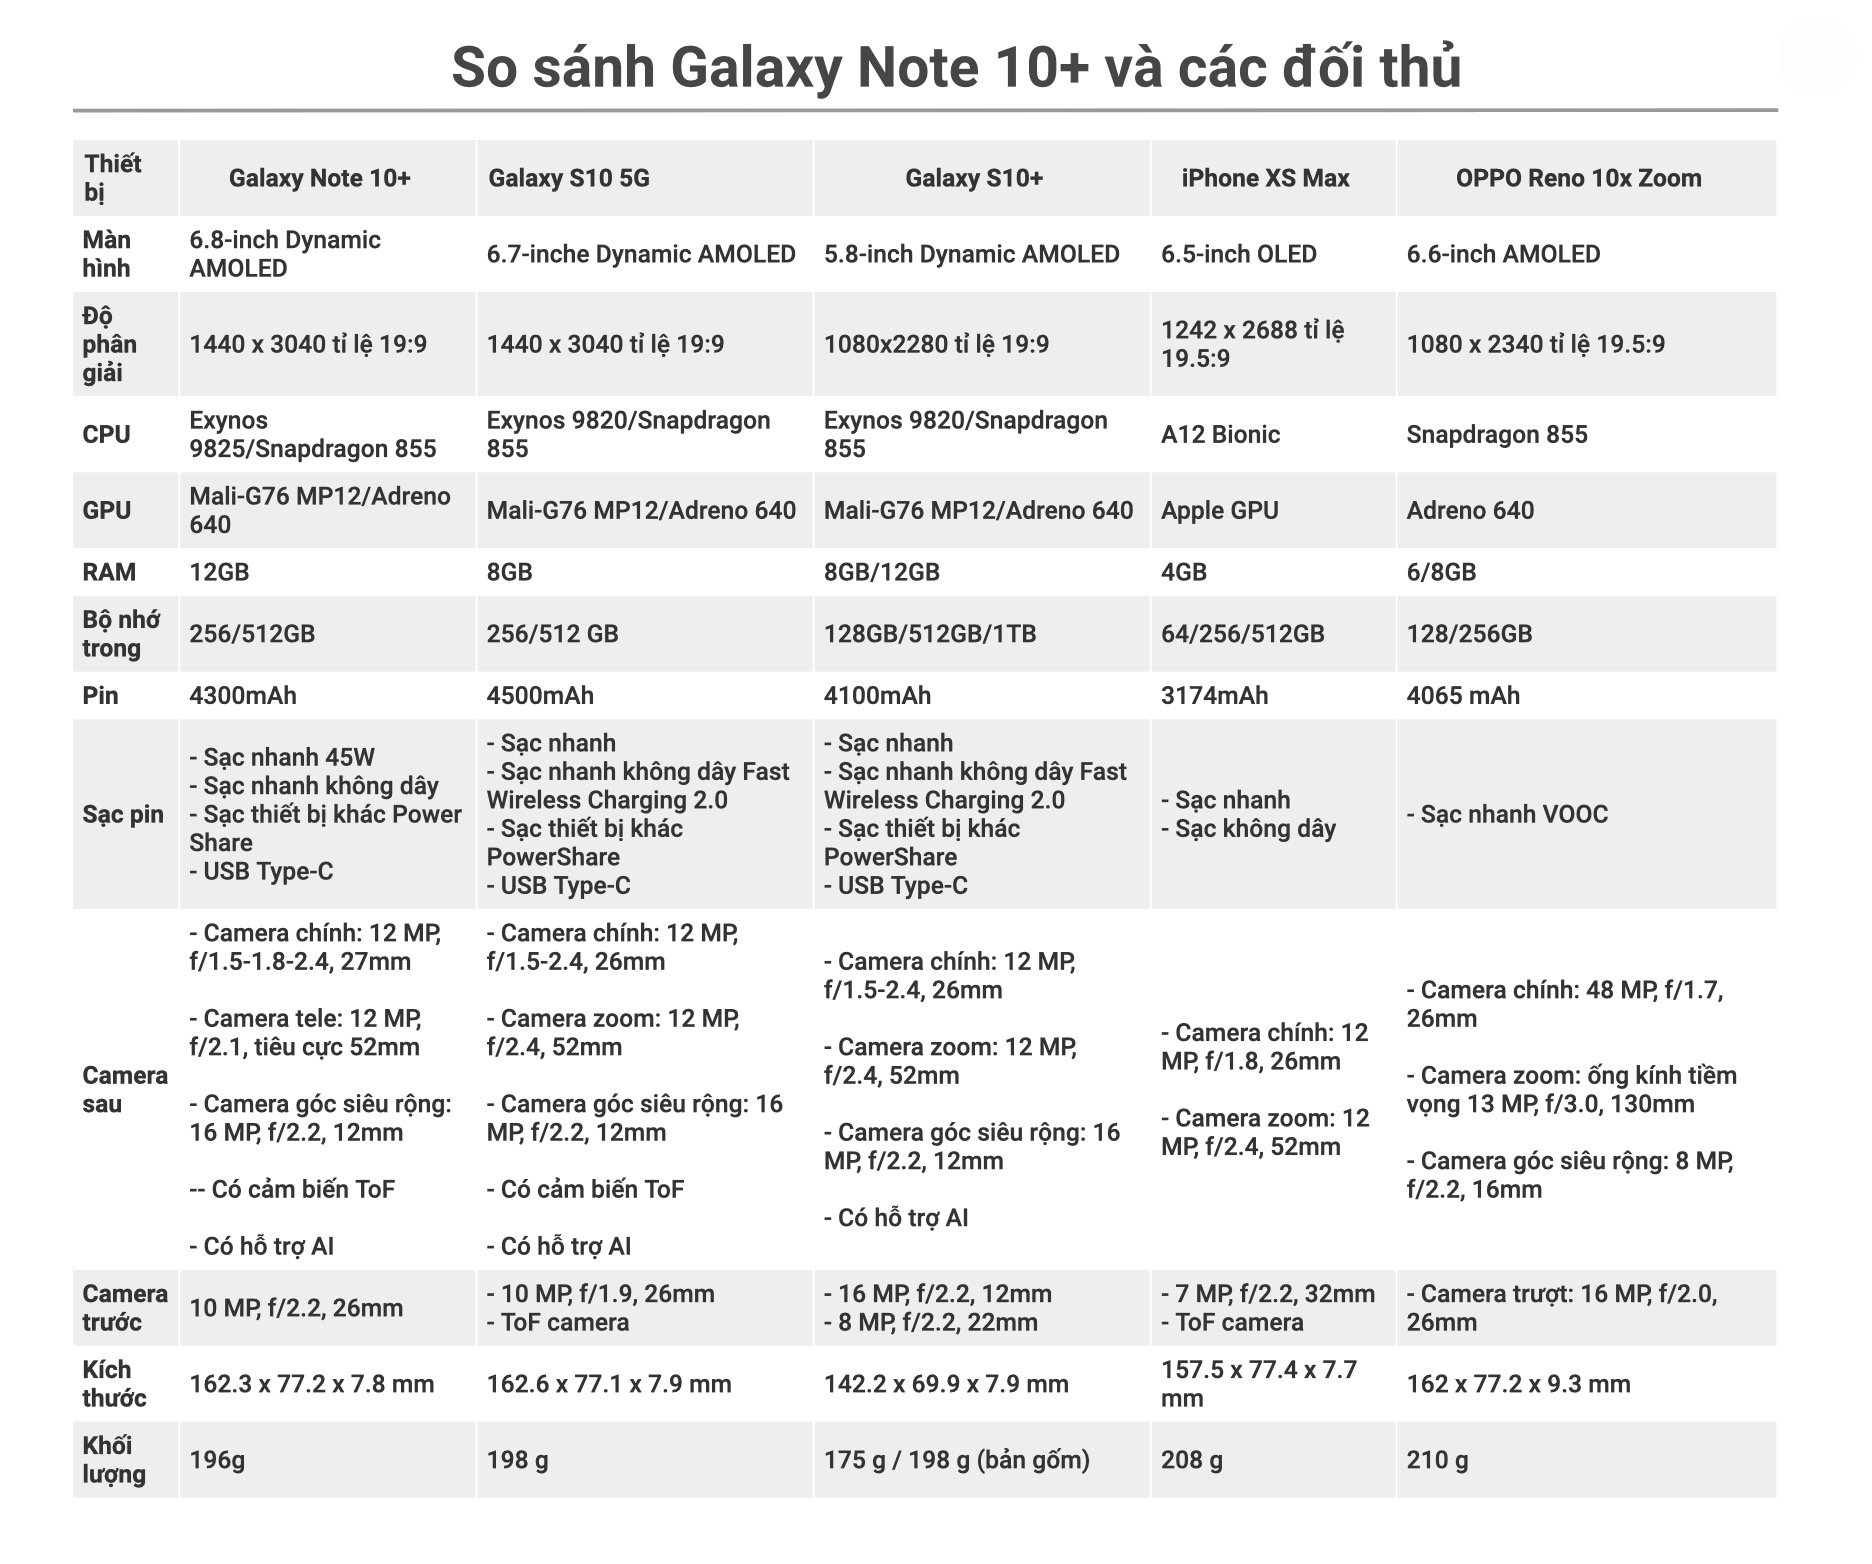 So sánh Galaxy Note 10+ với các đối thủ hiện tại, ai xưng vương và ai là kẻ bị soán ngôi?